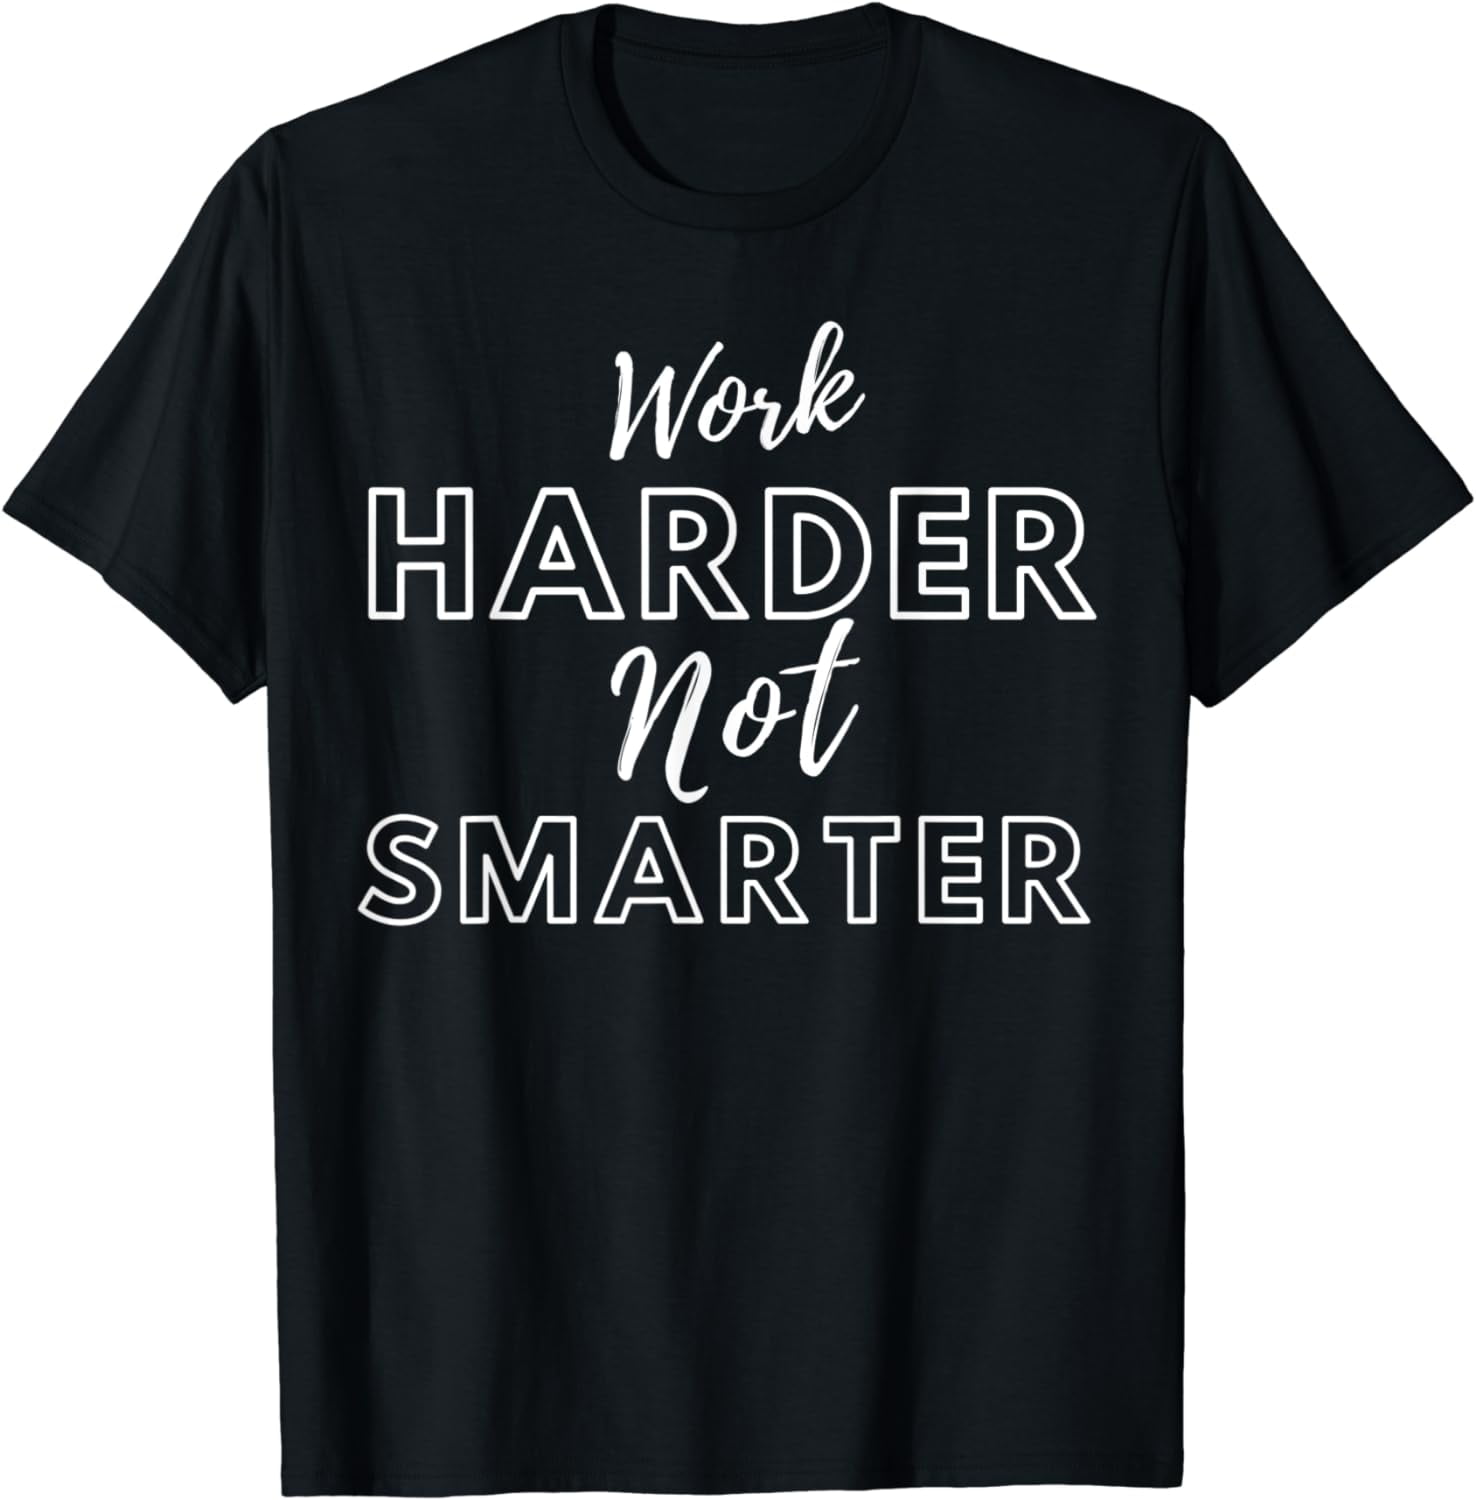 Work Harder Not Smarter T-Shirt - Walmart.com